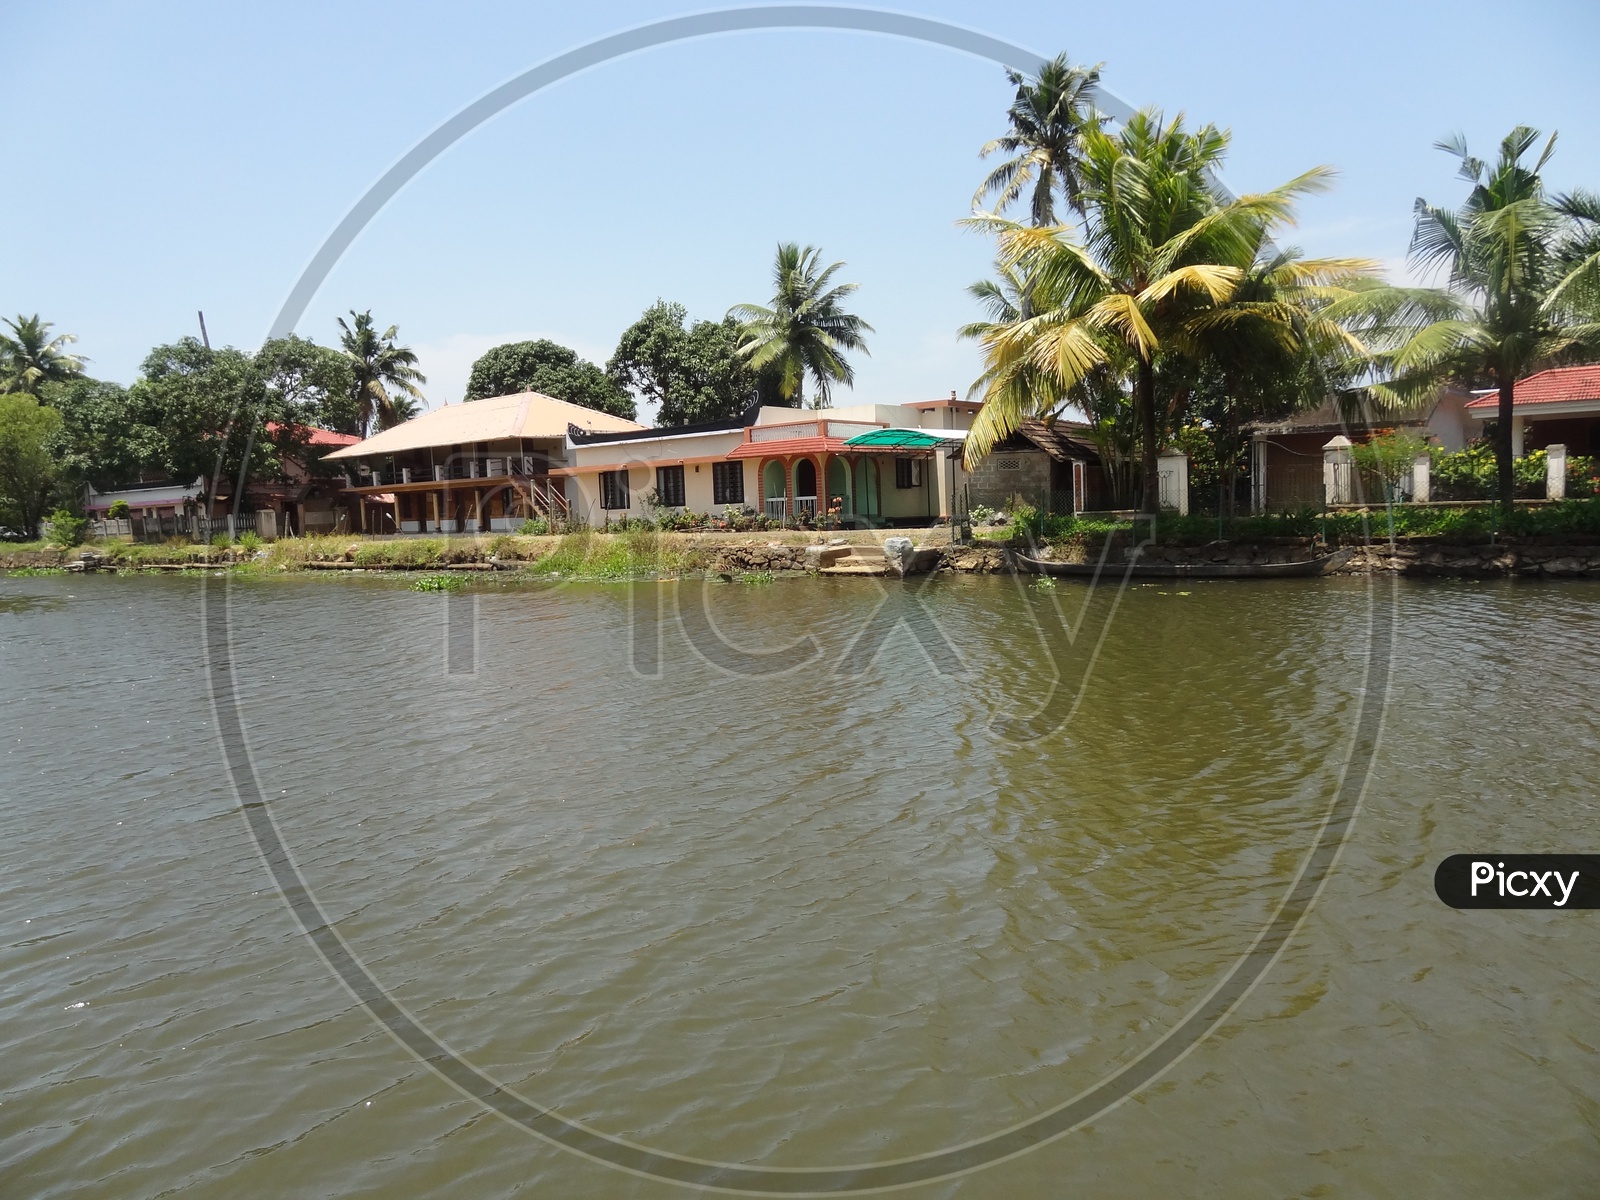 Houses alongside the Kerala backwaters